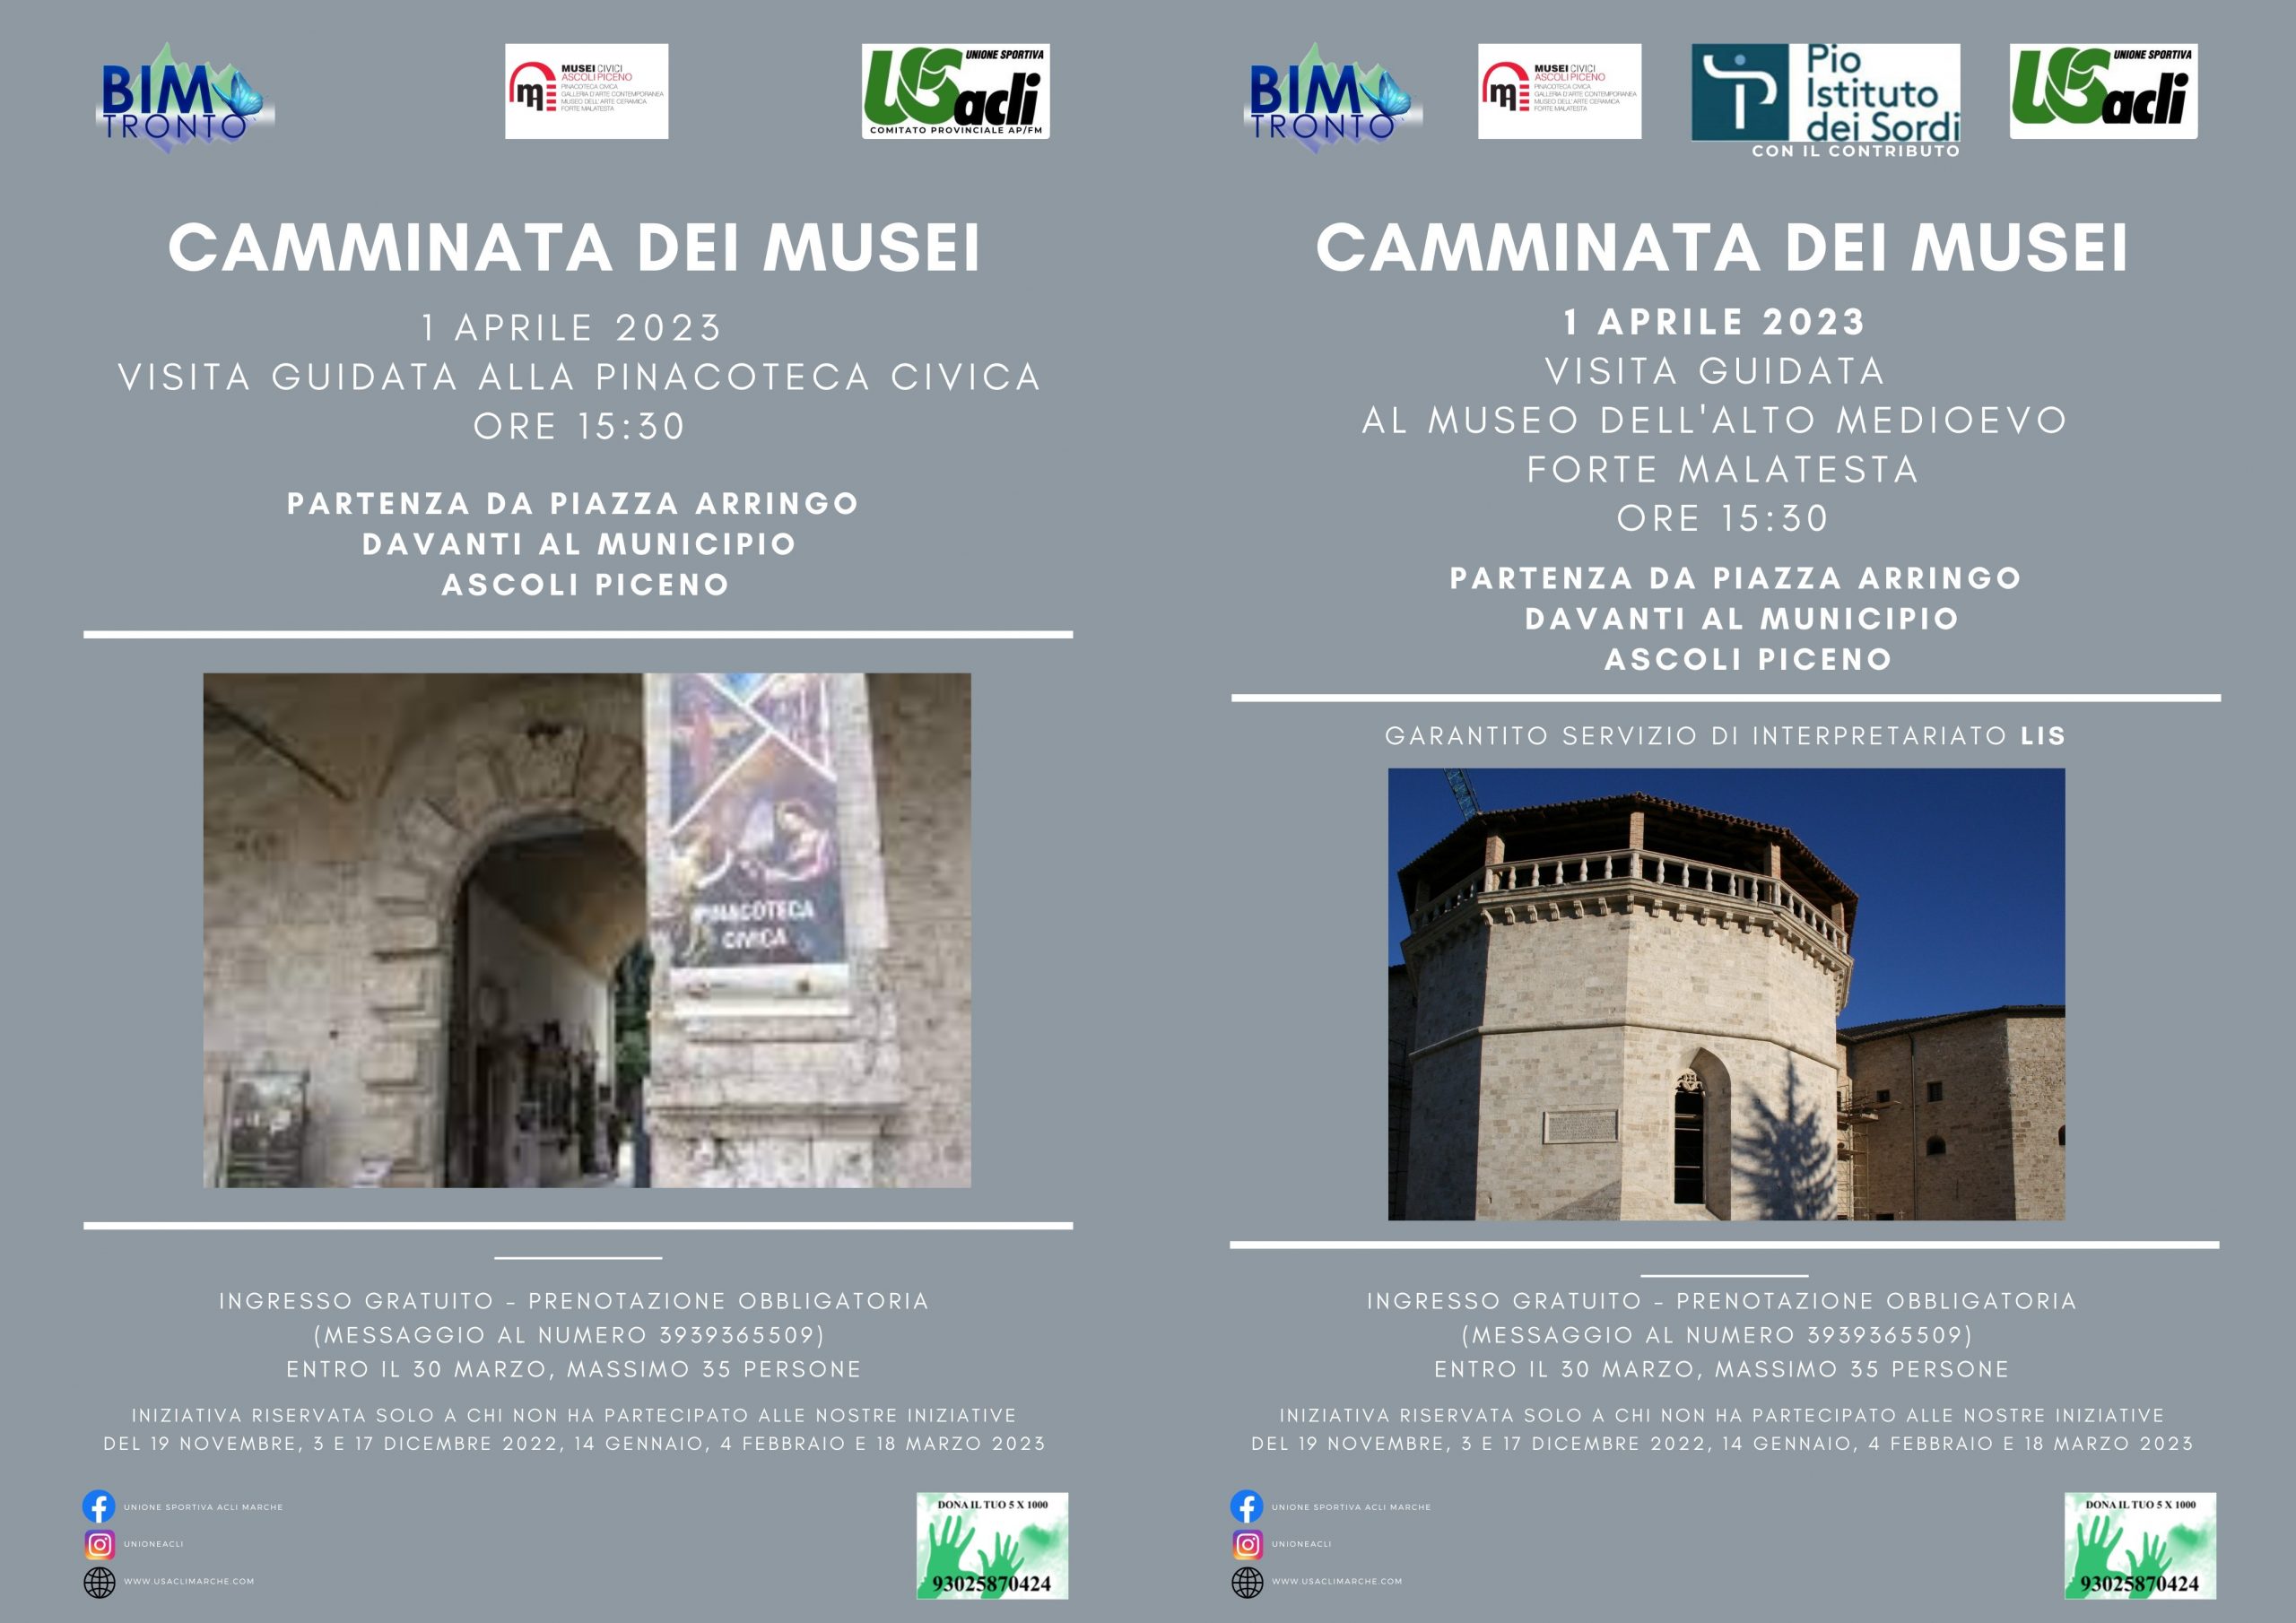 Marche. Ascoli Piceno: Progetto “Camminata dei musei”, sabato 1 aprile nuova iniziativa